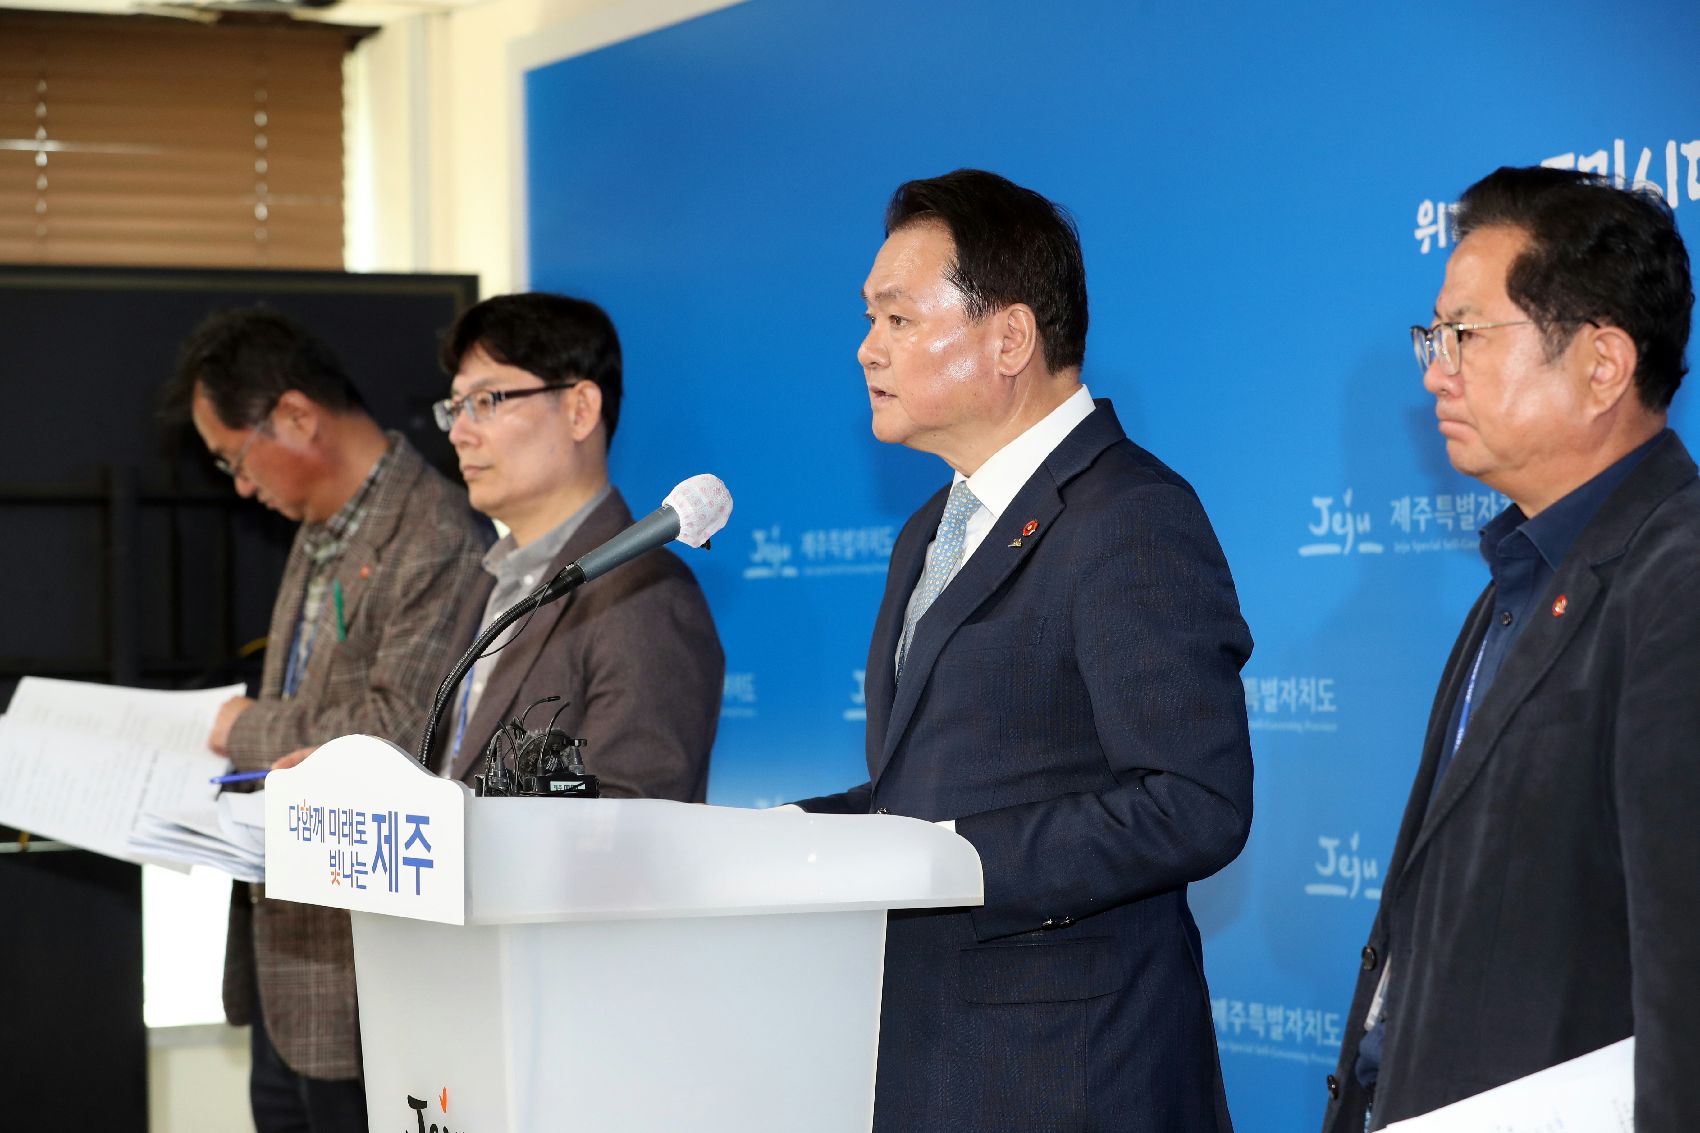 김희현(오른쪽 두번째) 제주도정무부지사가 17일 제주도청 기자실에서 제주도 농어가 경영안정과 1차산업 재도약을 위한 비전을 발표하고 있다.  제주도 제공